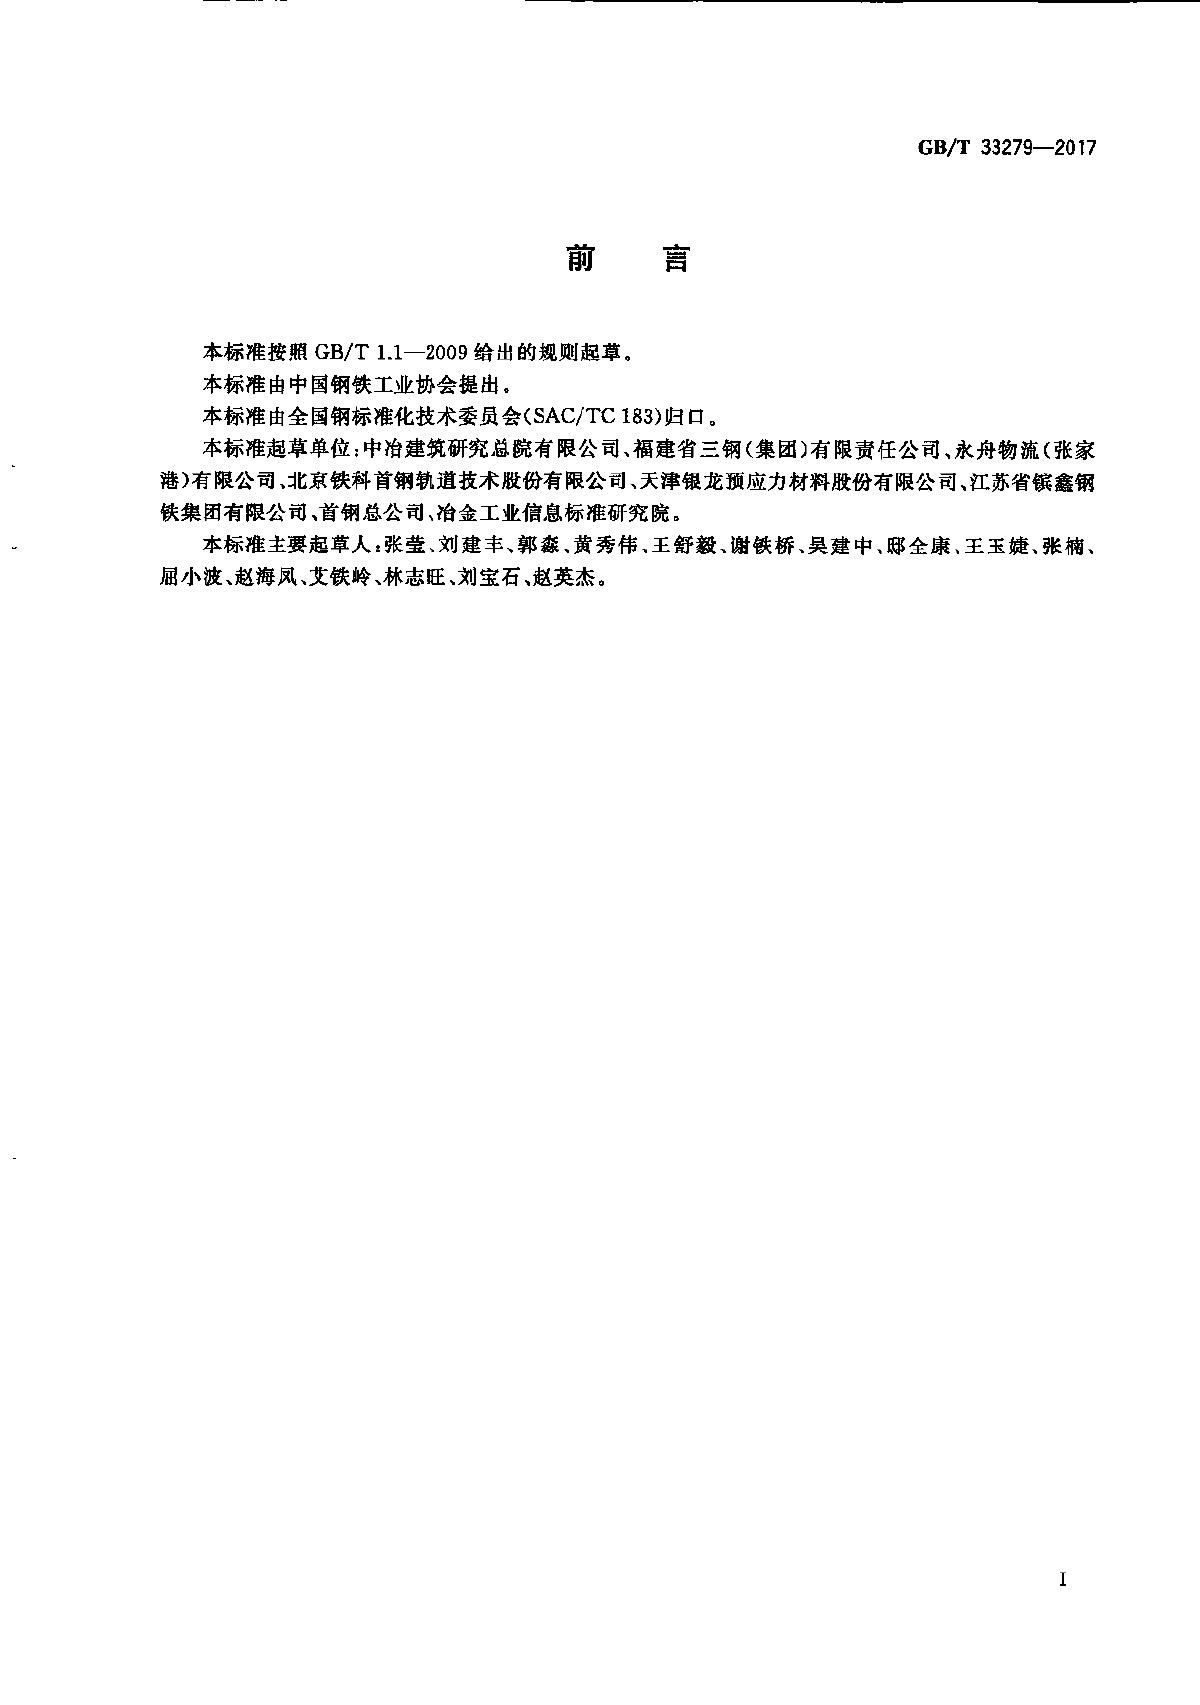 精轧螺纹钢GB-T33279-2017-图二